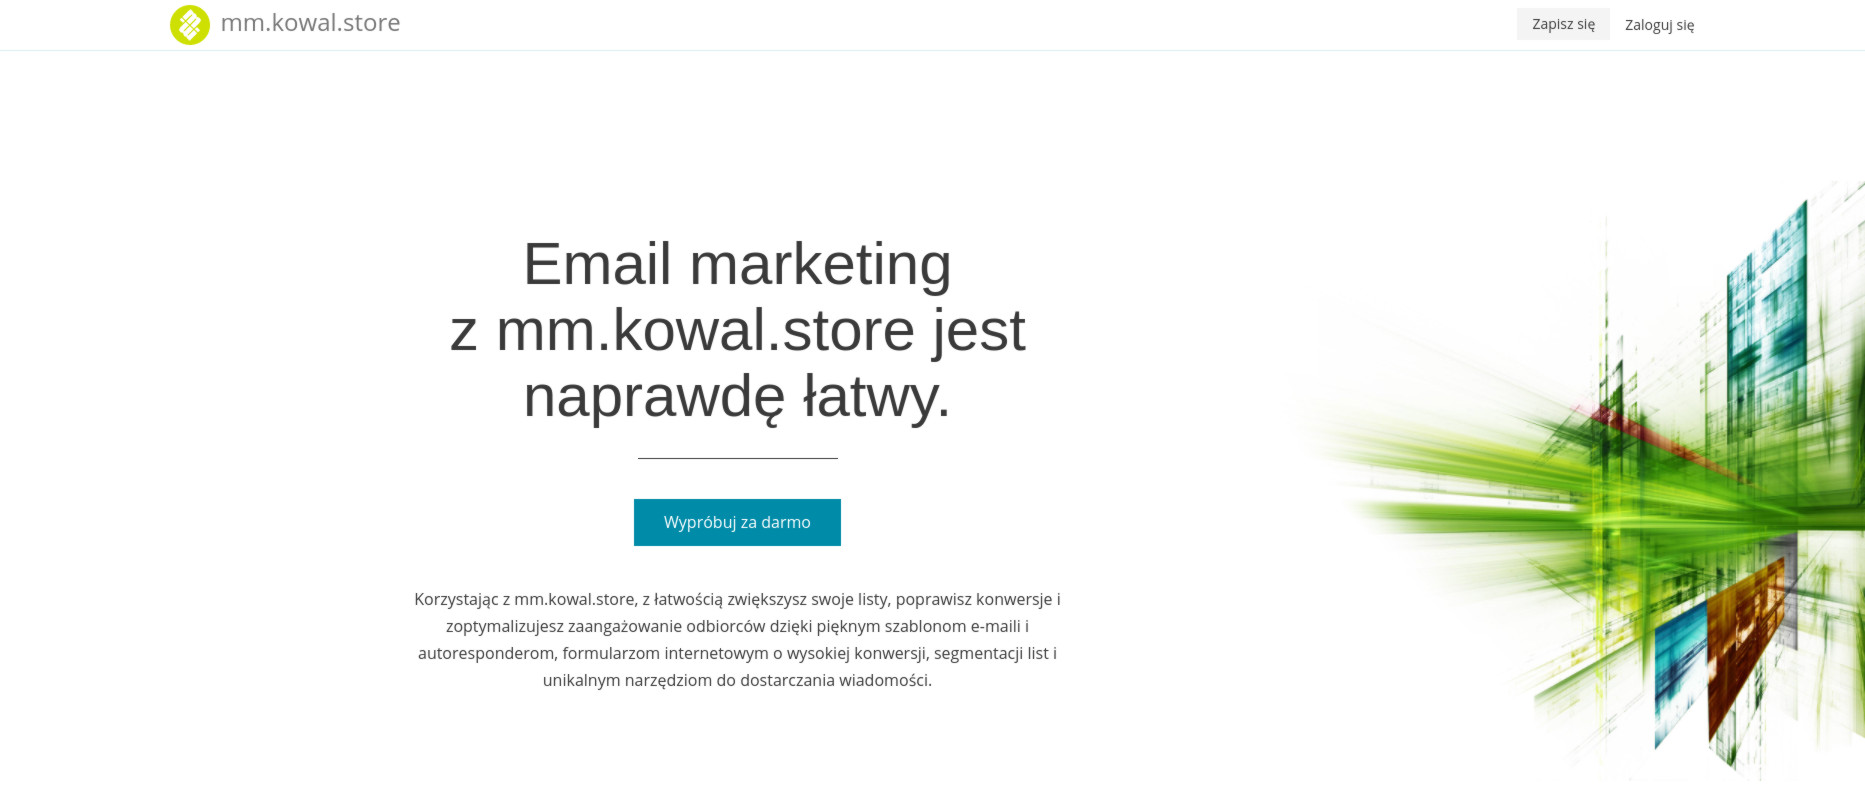 Email marketing z mm.kowal.store jest naprawdę łatwy.